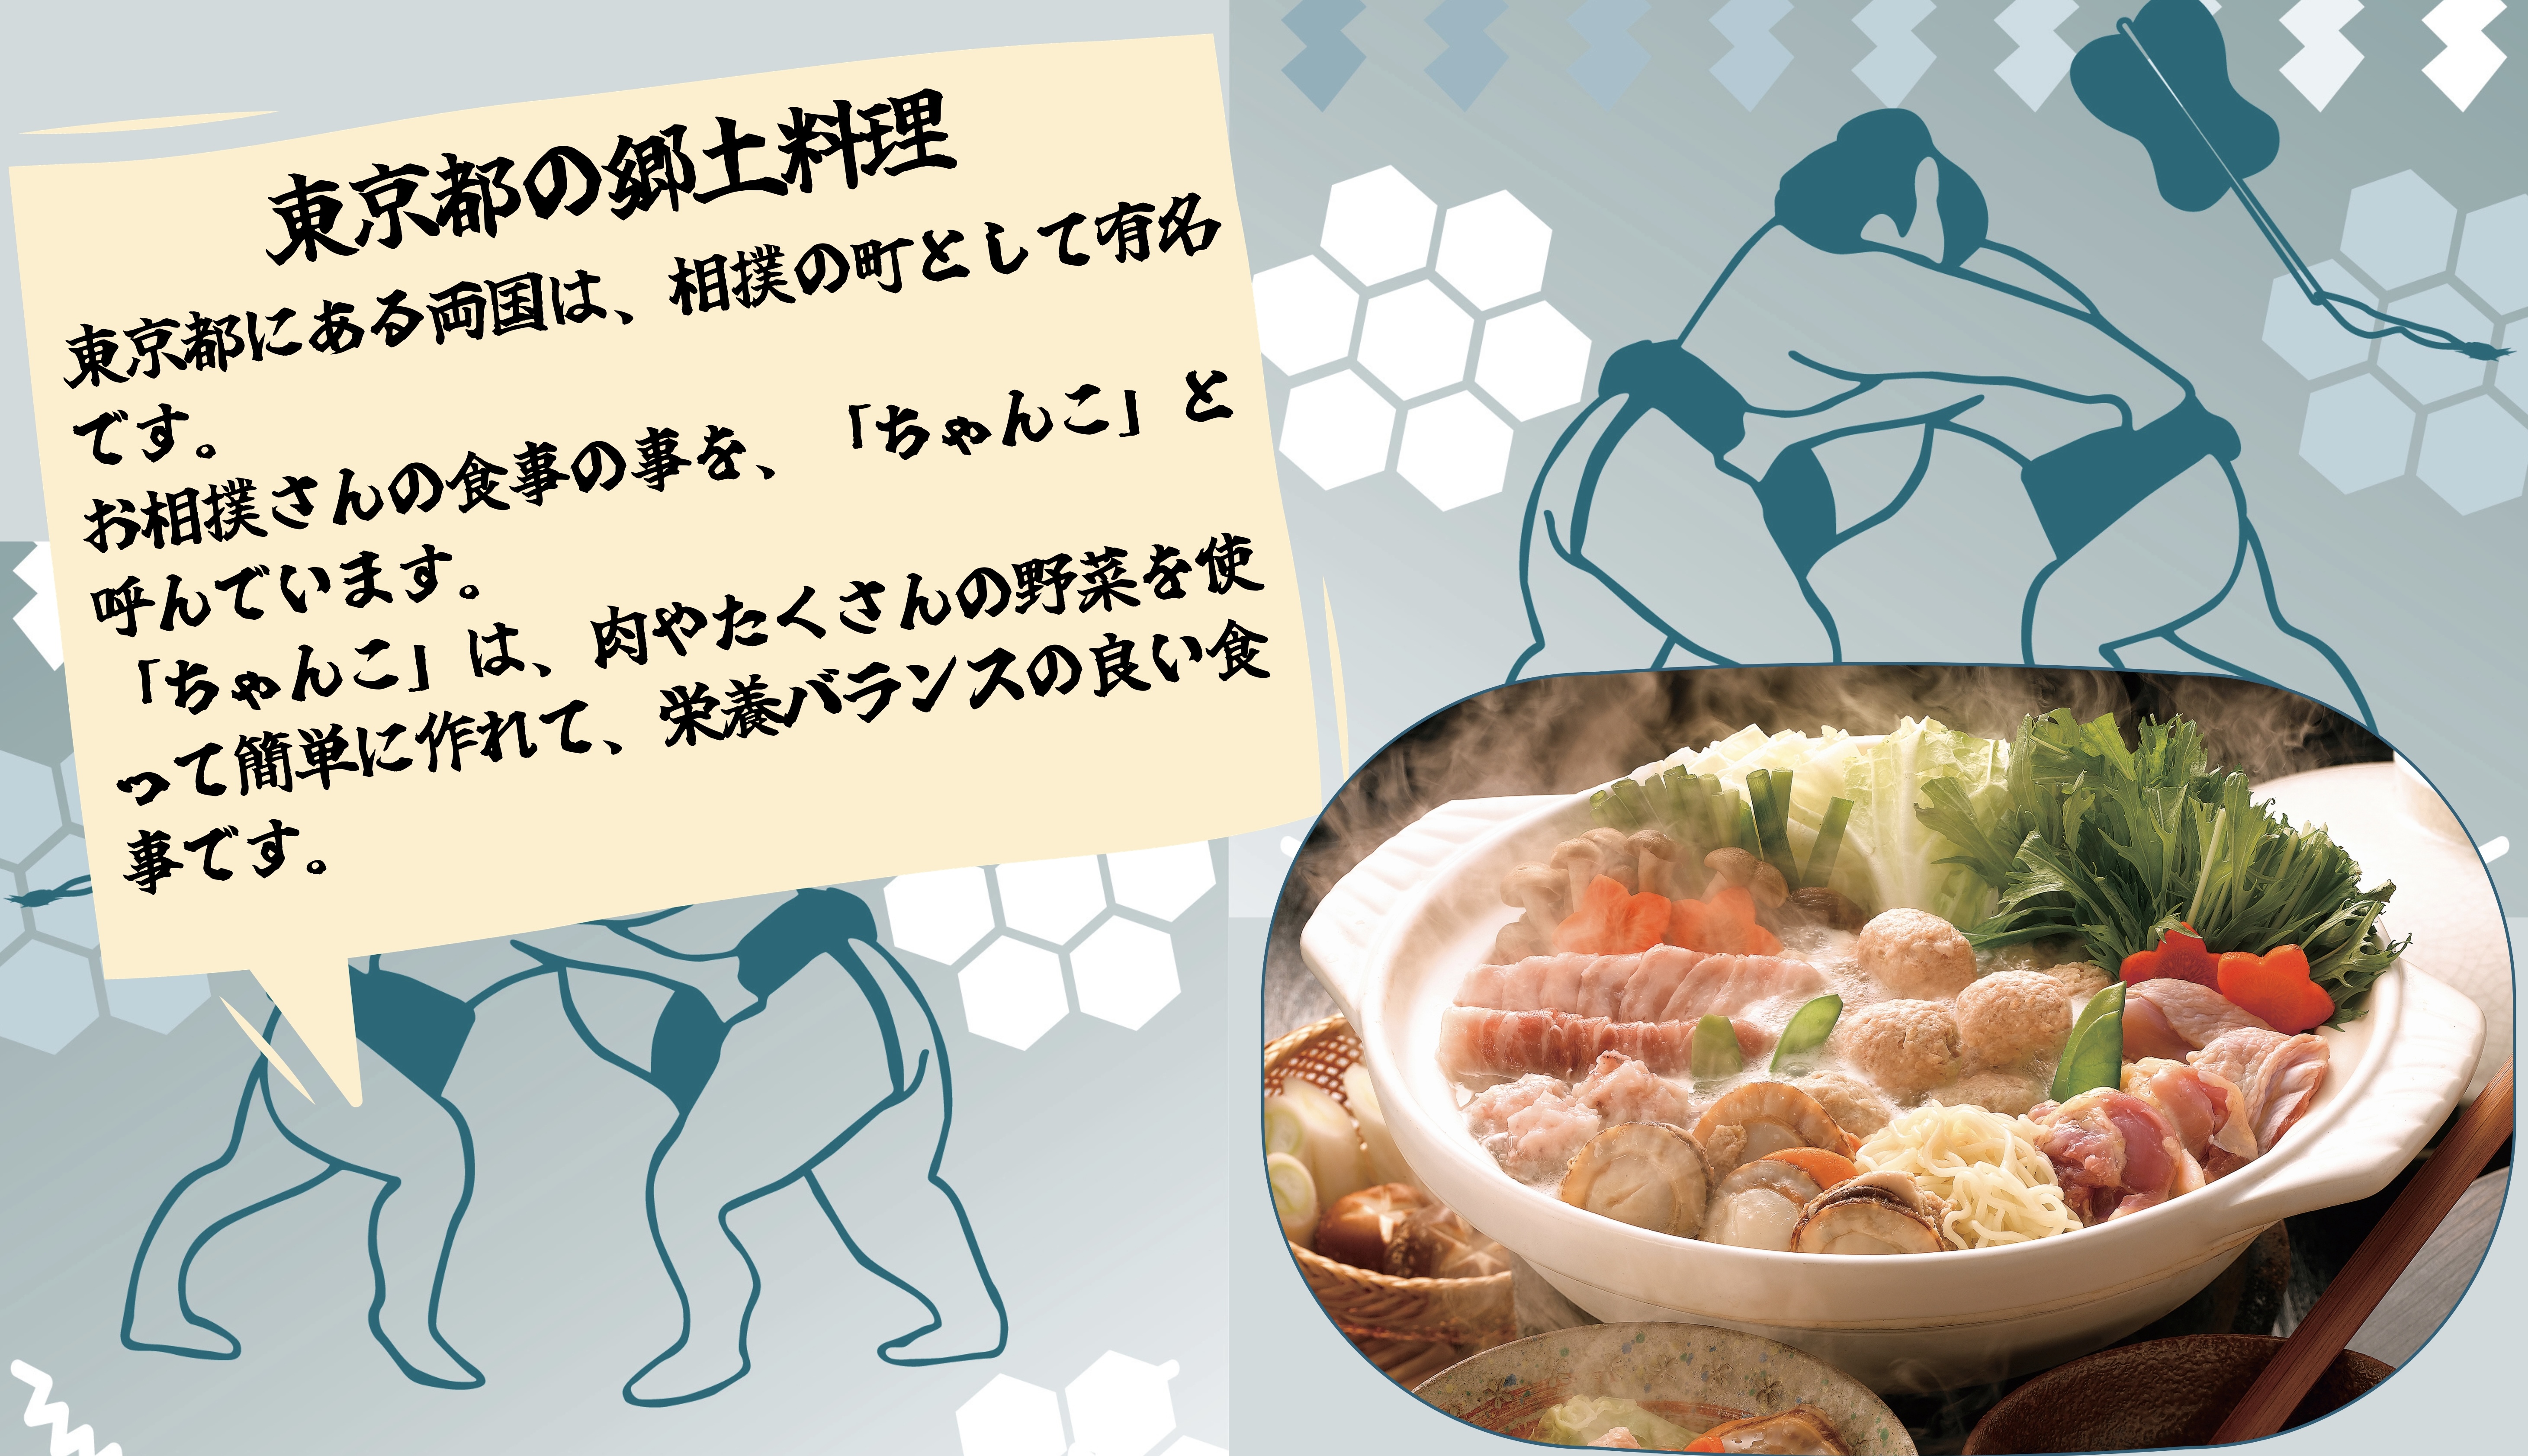 東京都のきょうど料理：東京都にある両国は、相撲の町として有名です。 お相撲さんの食事の事を、「ちゃんこ」と呼んでいます。 「ちゃんこ」は、肉やたくさんの野菜を使って簡単に作れて、栄養バランスの良い食事です。